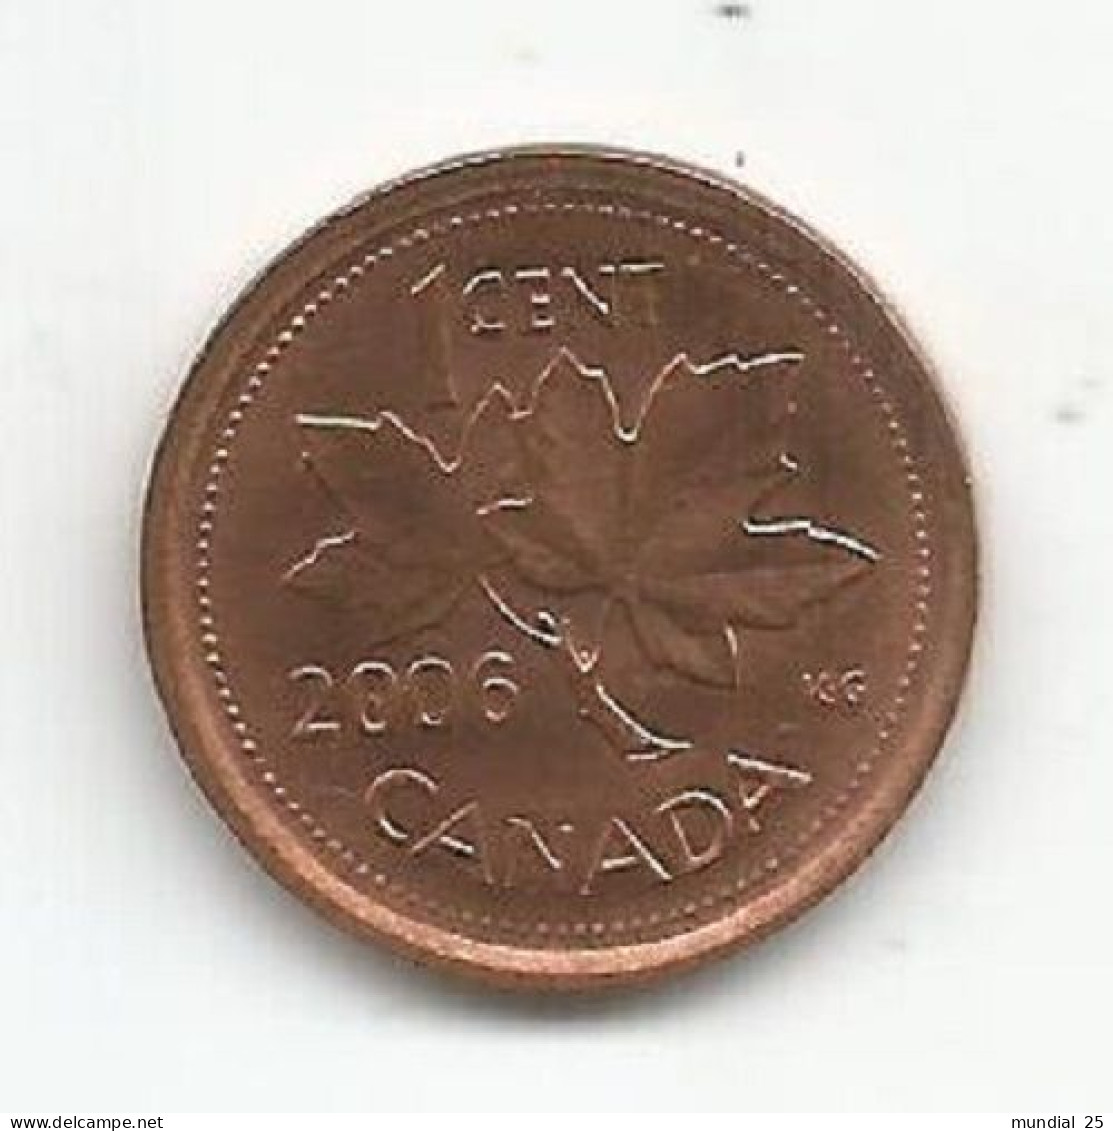 CANADA 1 CENT 2006 - Canada